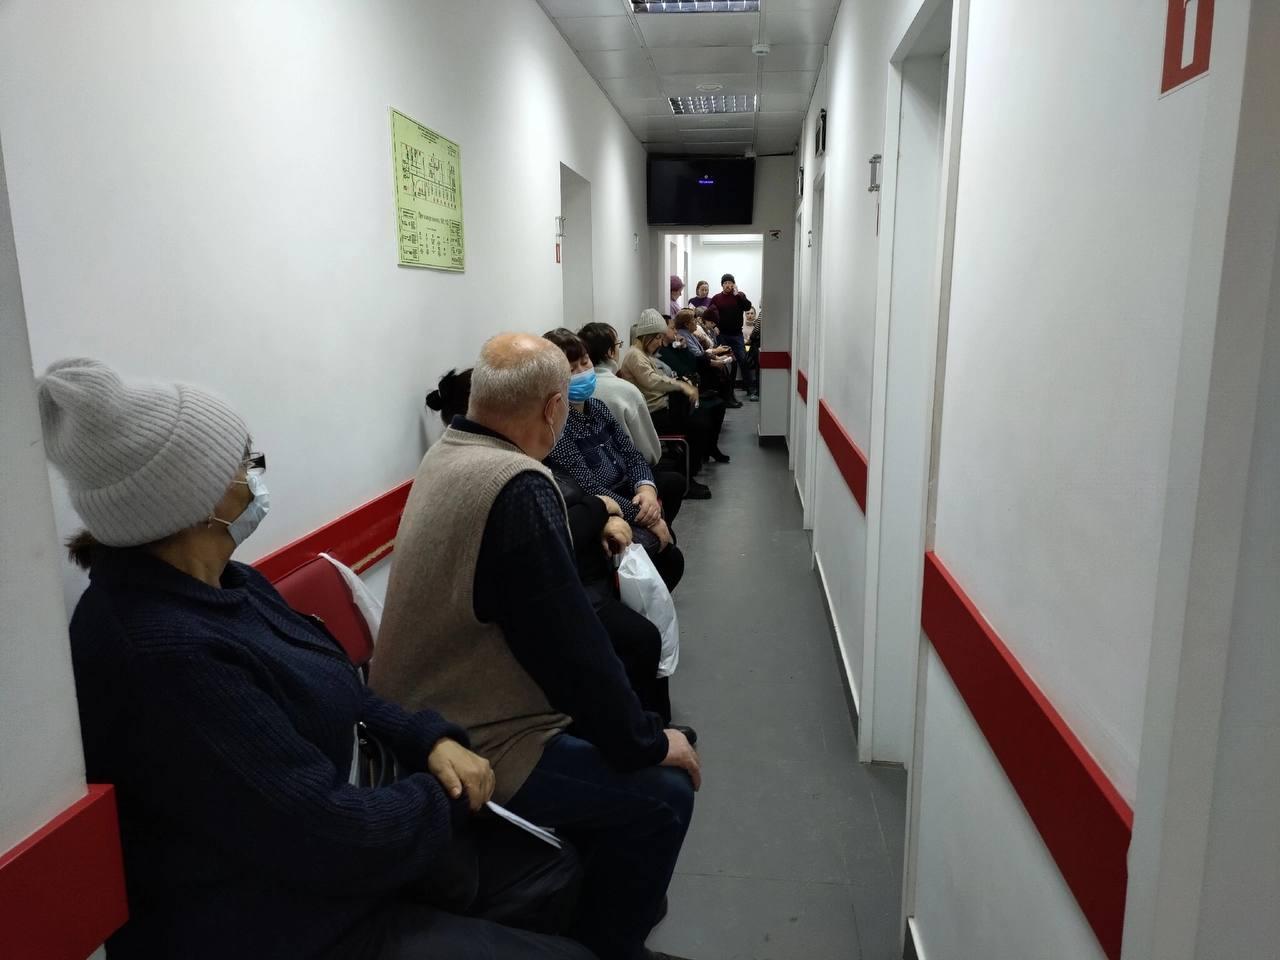 Фото 16 тысяч вызовов в сутки: что происходит на станции скорой помощи после всплеска ОРВИ в Новосибирске 4